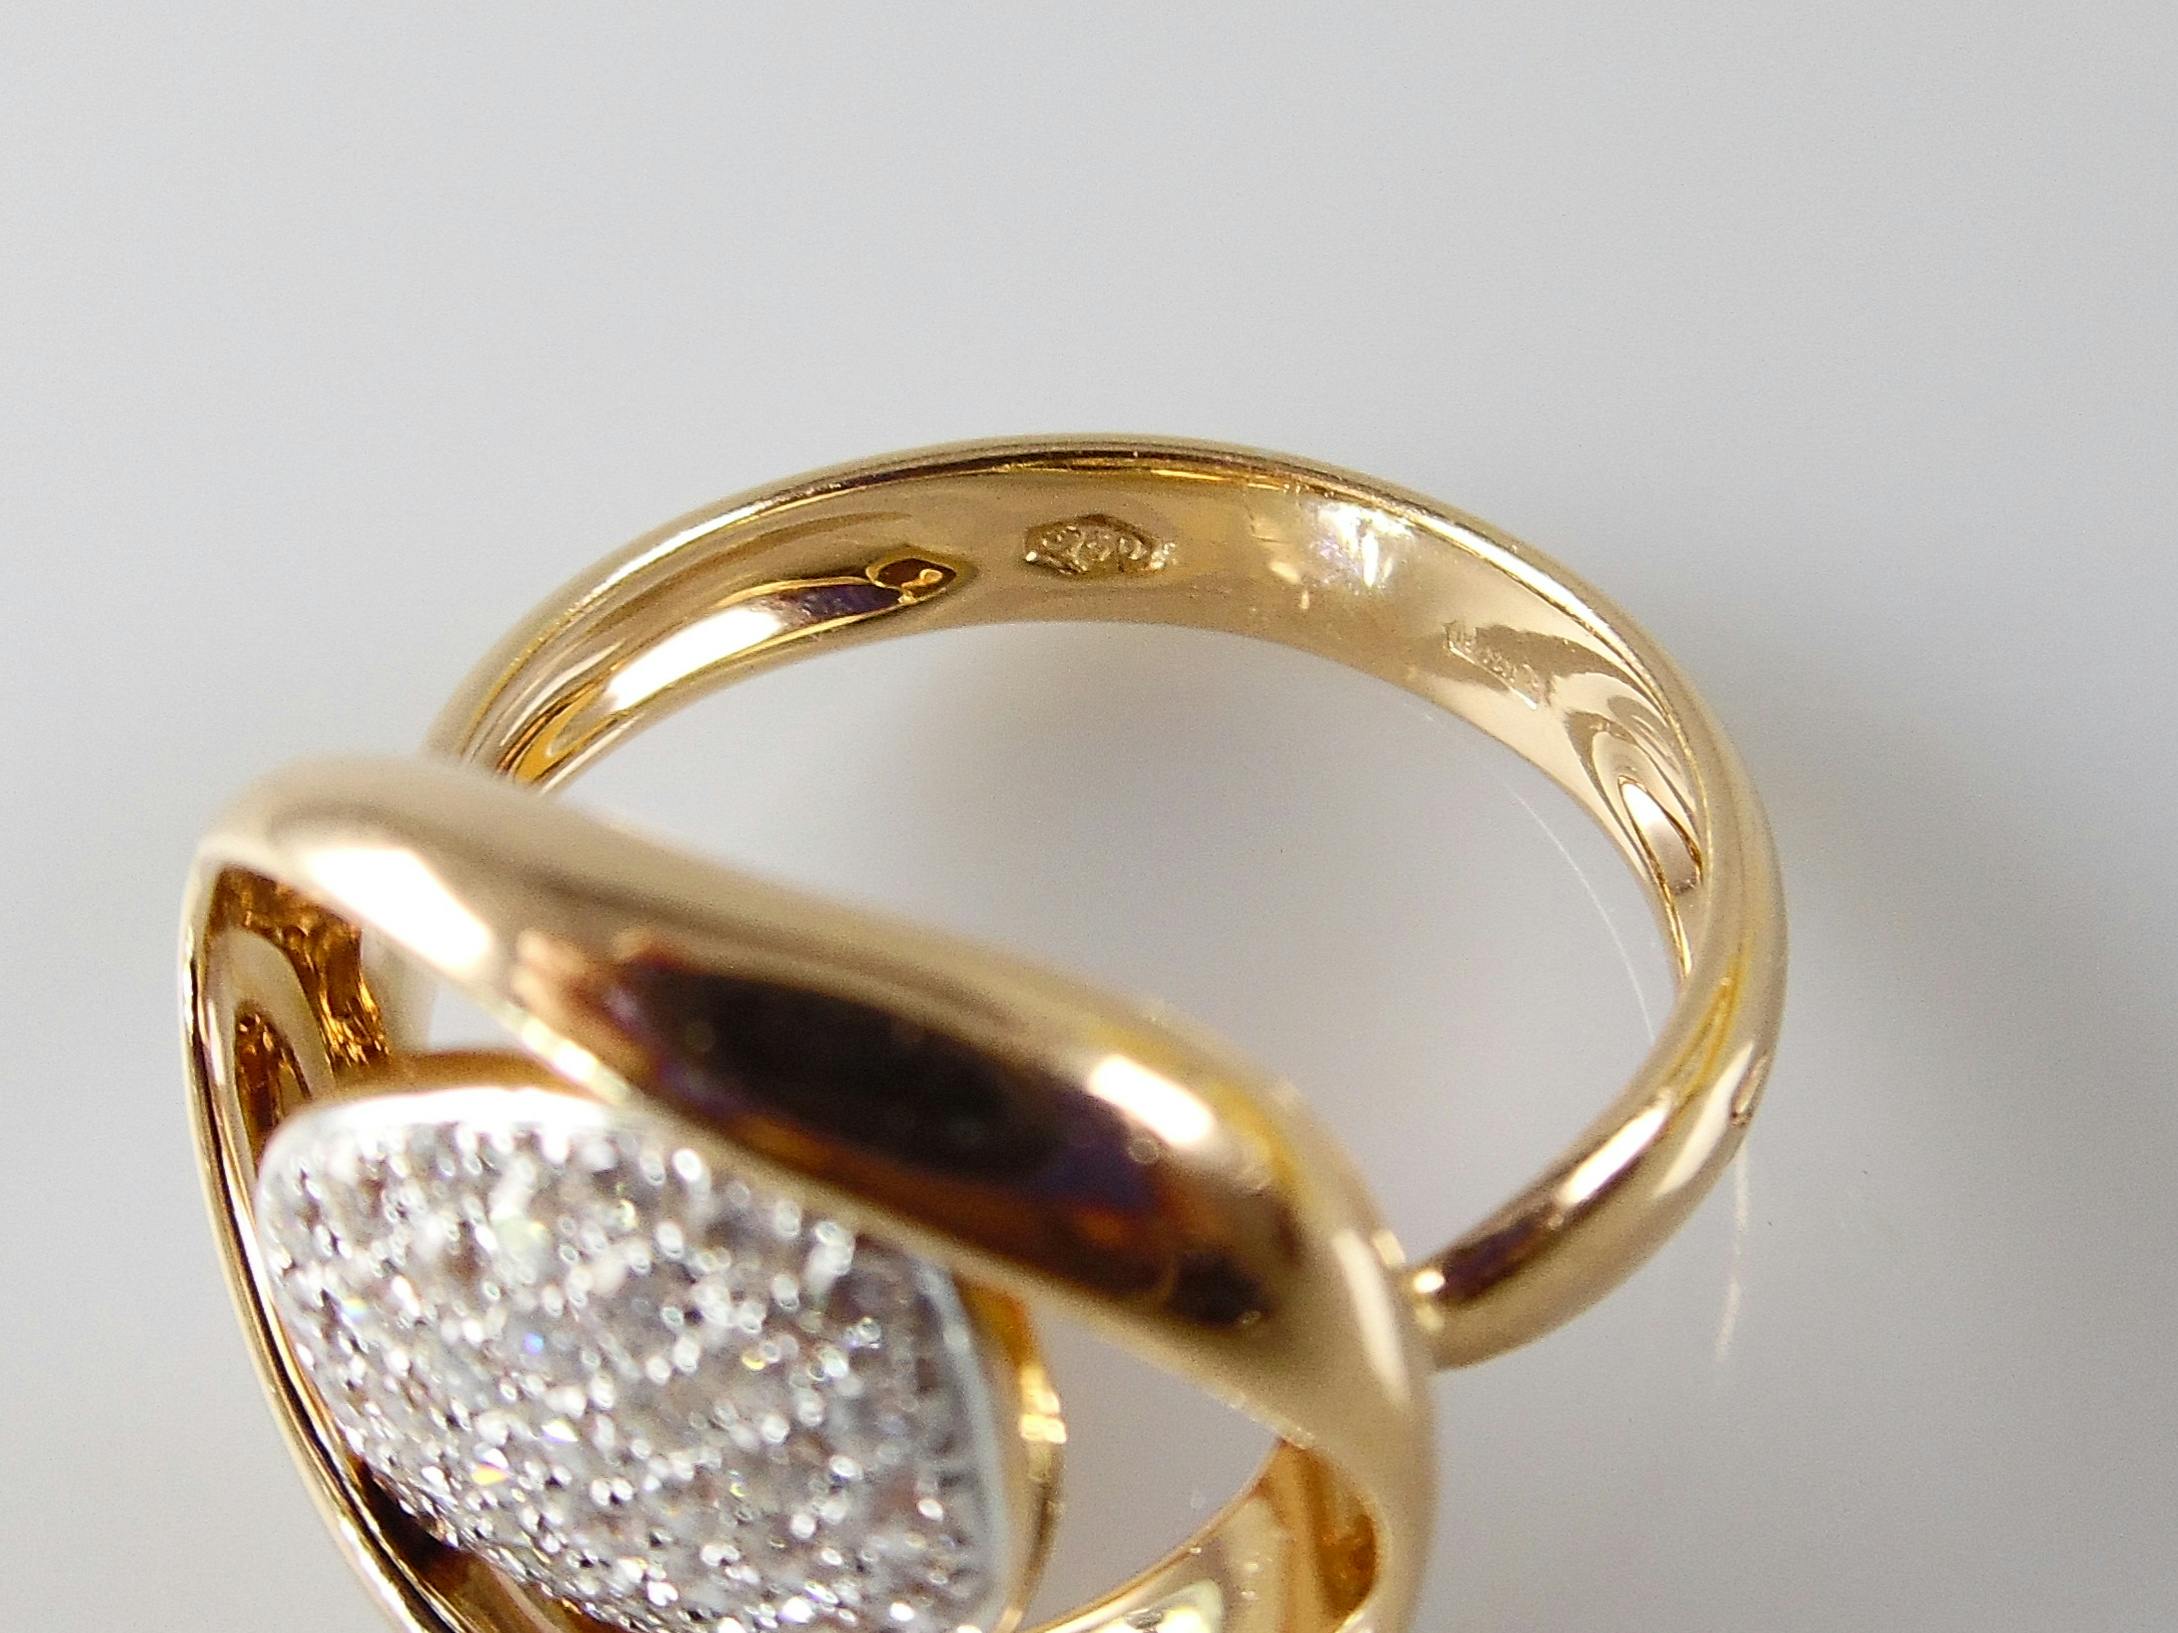 18k roségouden ring met 0.43 ct F-VVS diamanten - ringmaat 17,25 mm (54) kopen? Bied vanaf 450!